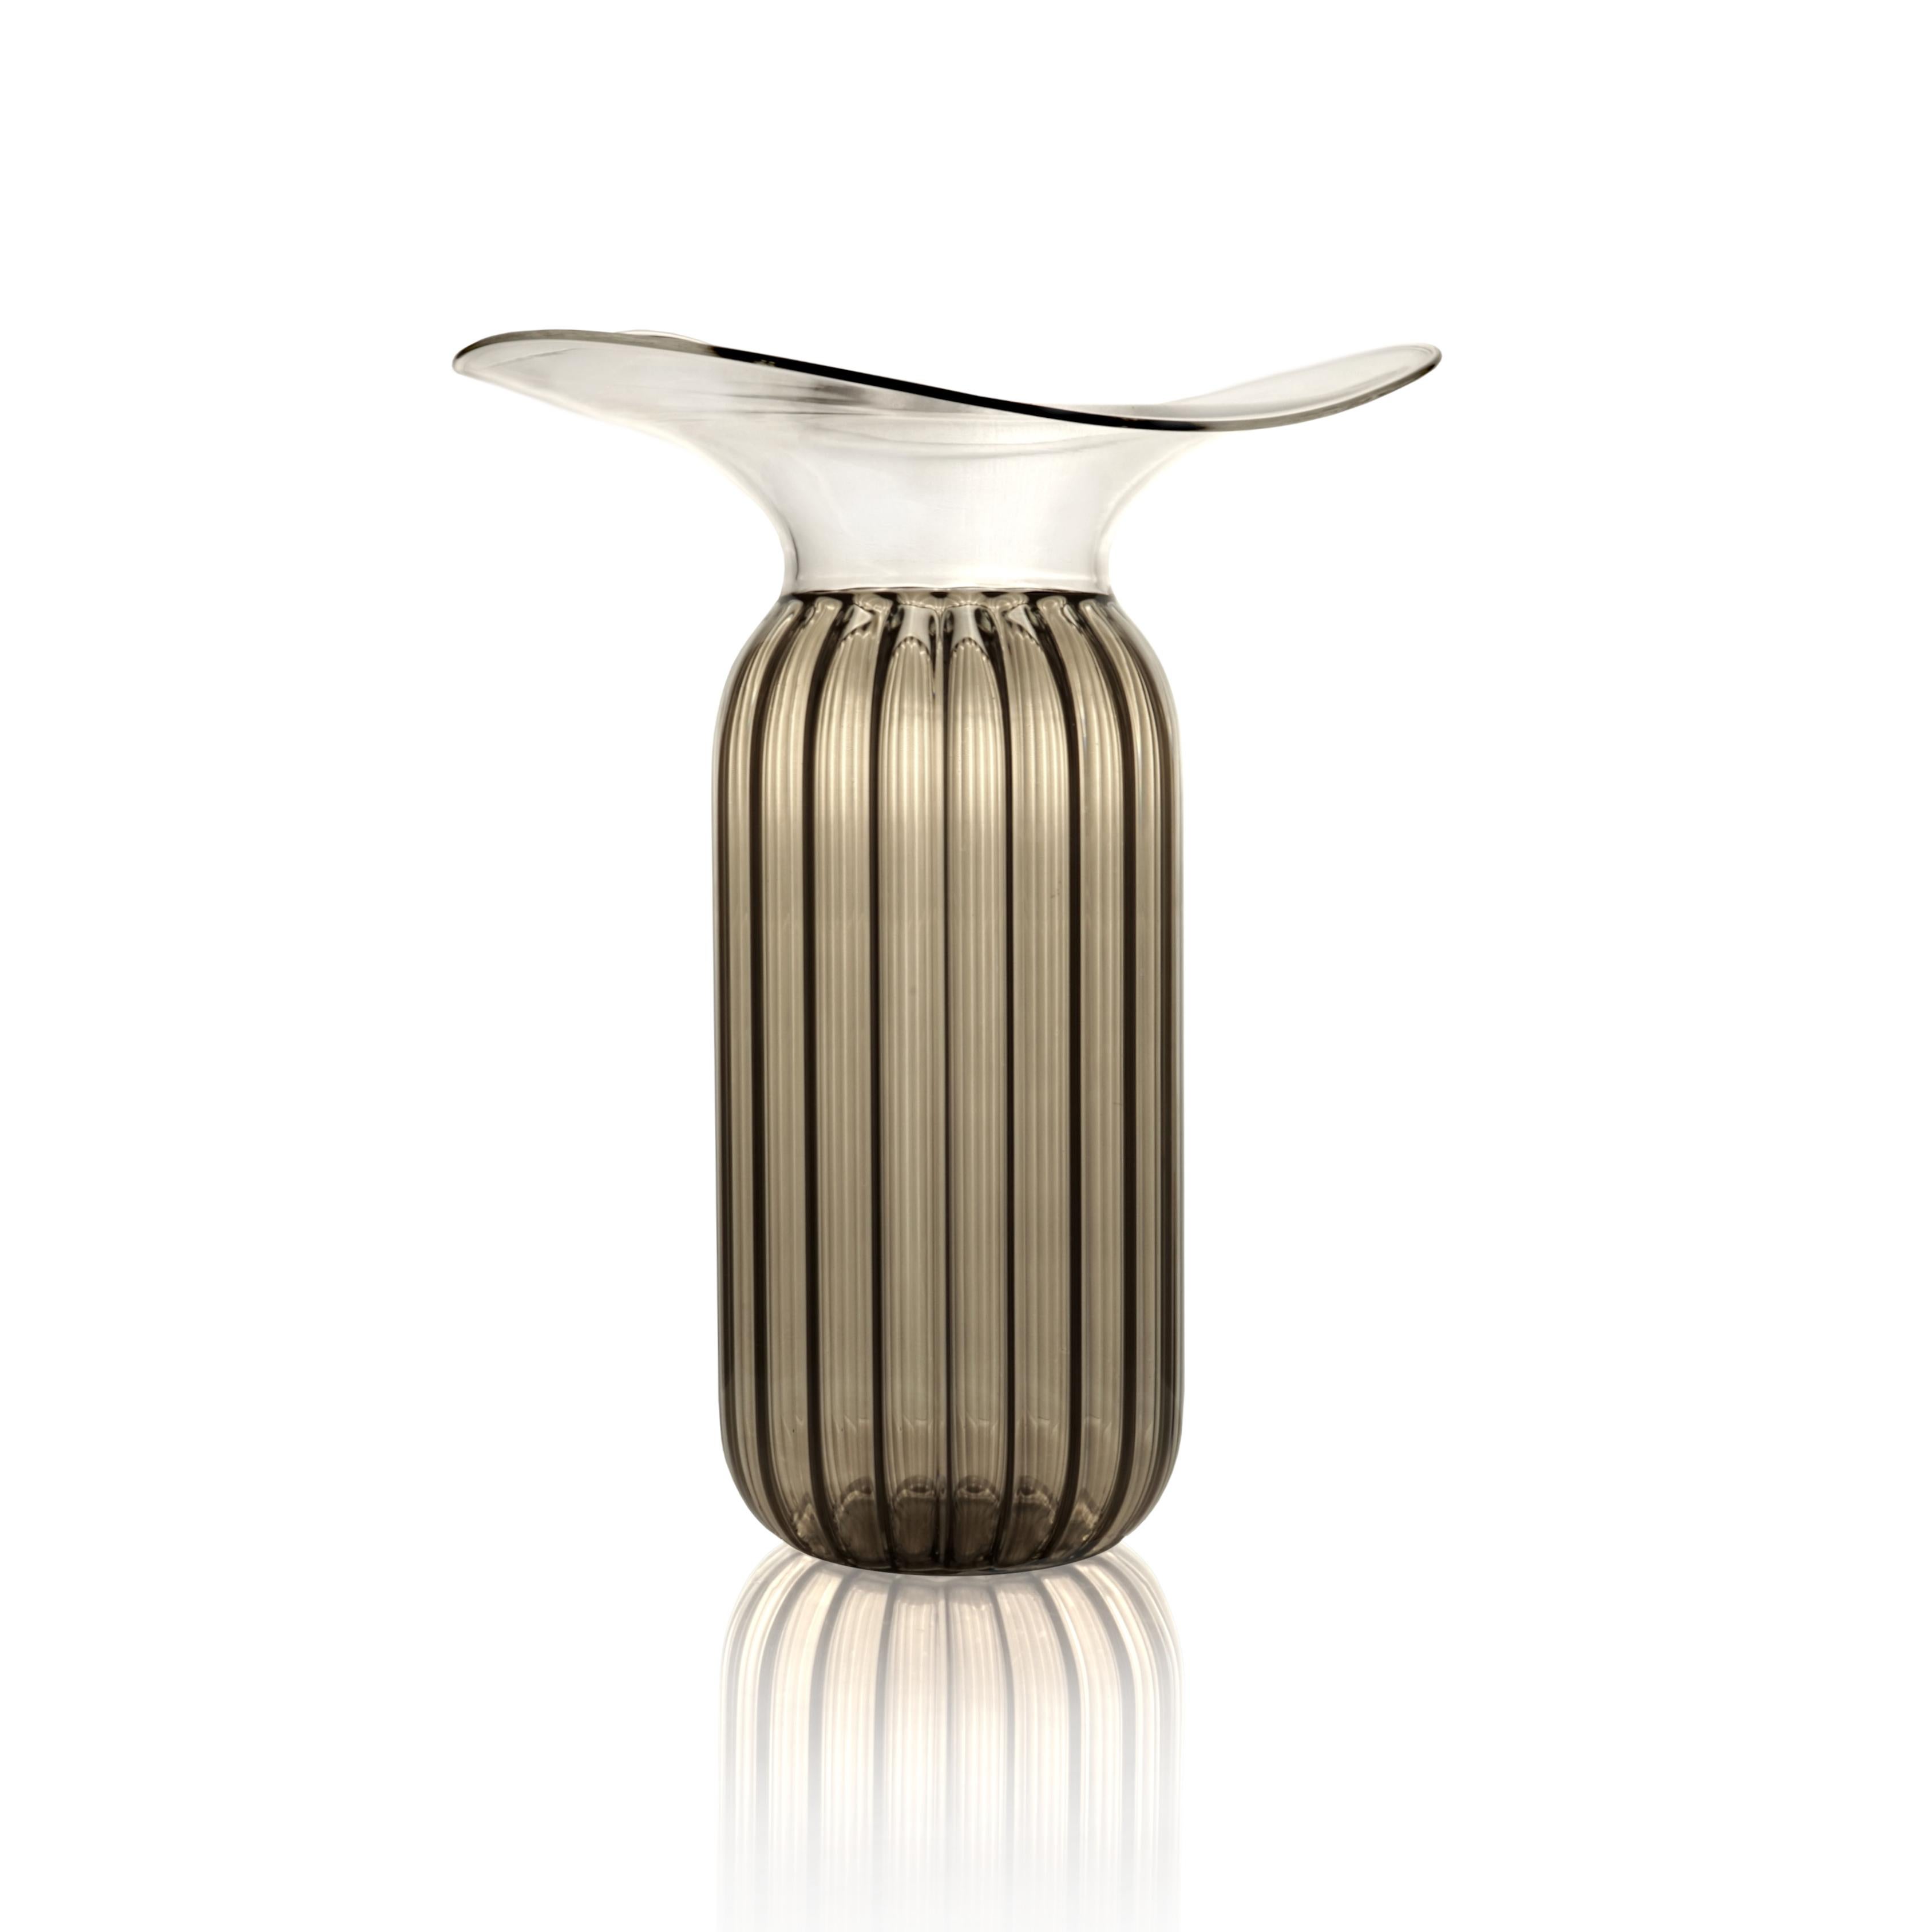 Die Vasen der Tosca Collection verkörpern mit ihrem einzigartigen Design Eleganz und Handwerkskunst. Handgefertigt aus Borosilikatglas, wird ihre schlichte Erscheinung durch einen flatternden Hals aus Klarglas unterstrichen, der bei jedem Stück